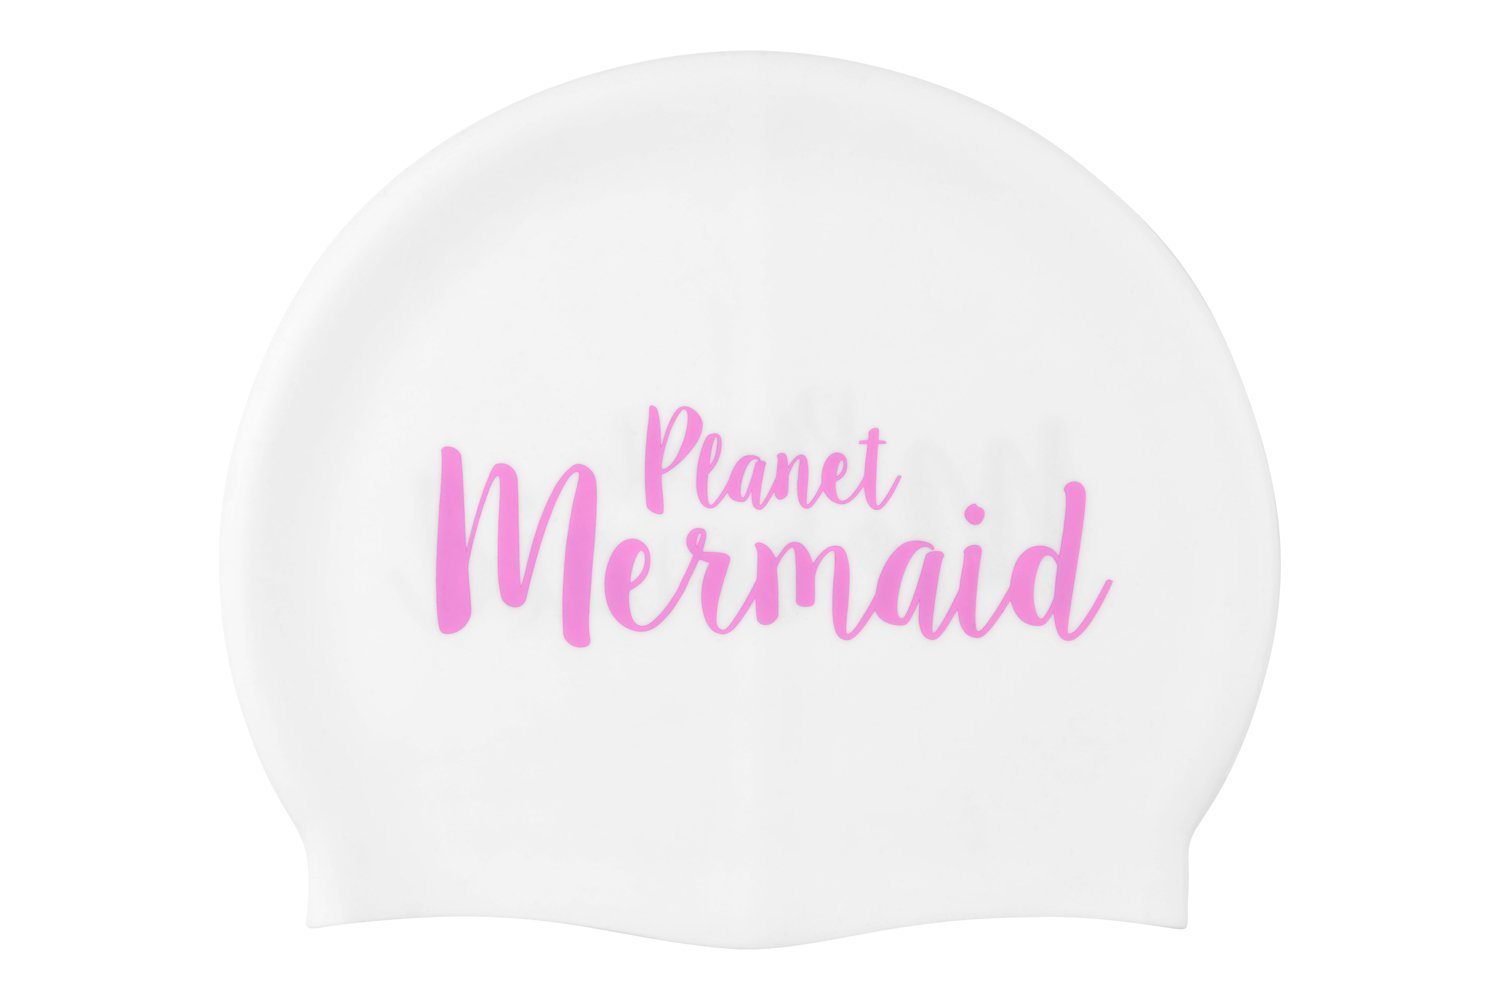 Mermaid swimming hat from Planet Mermaid